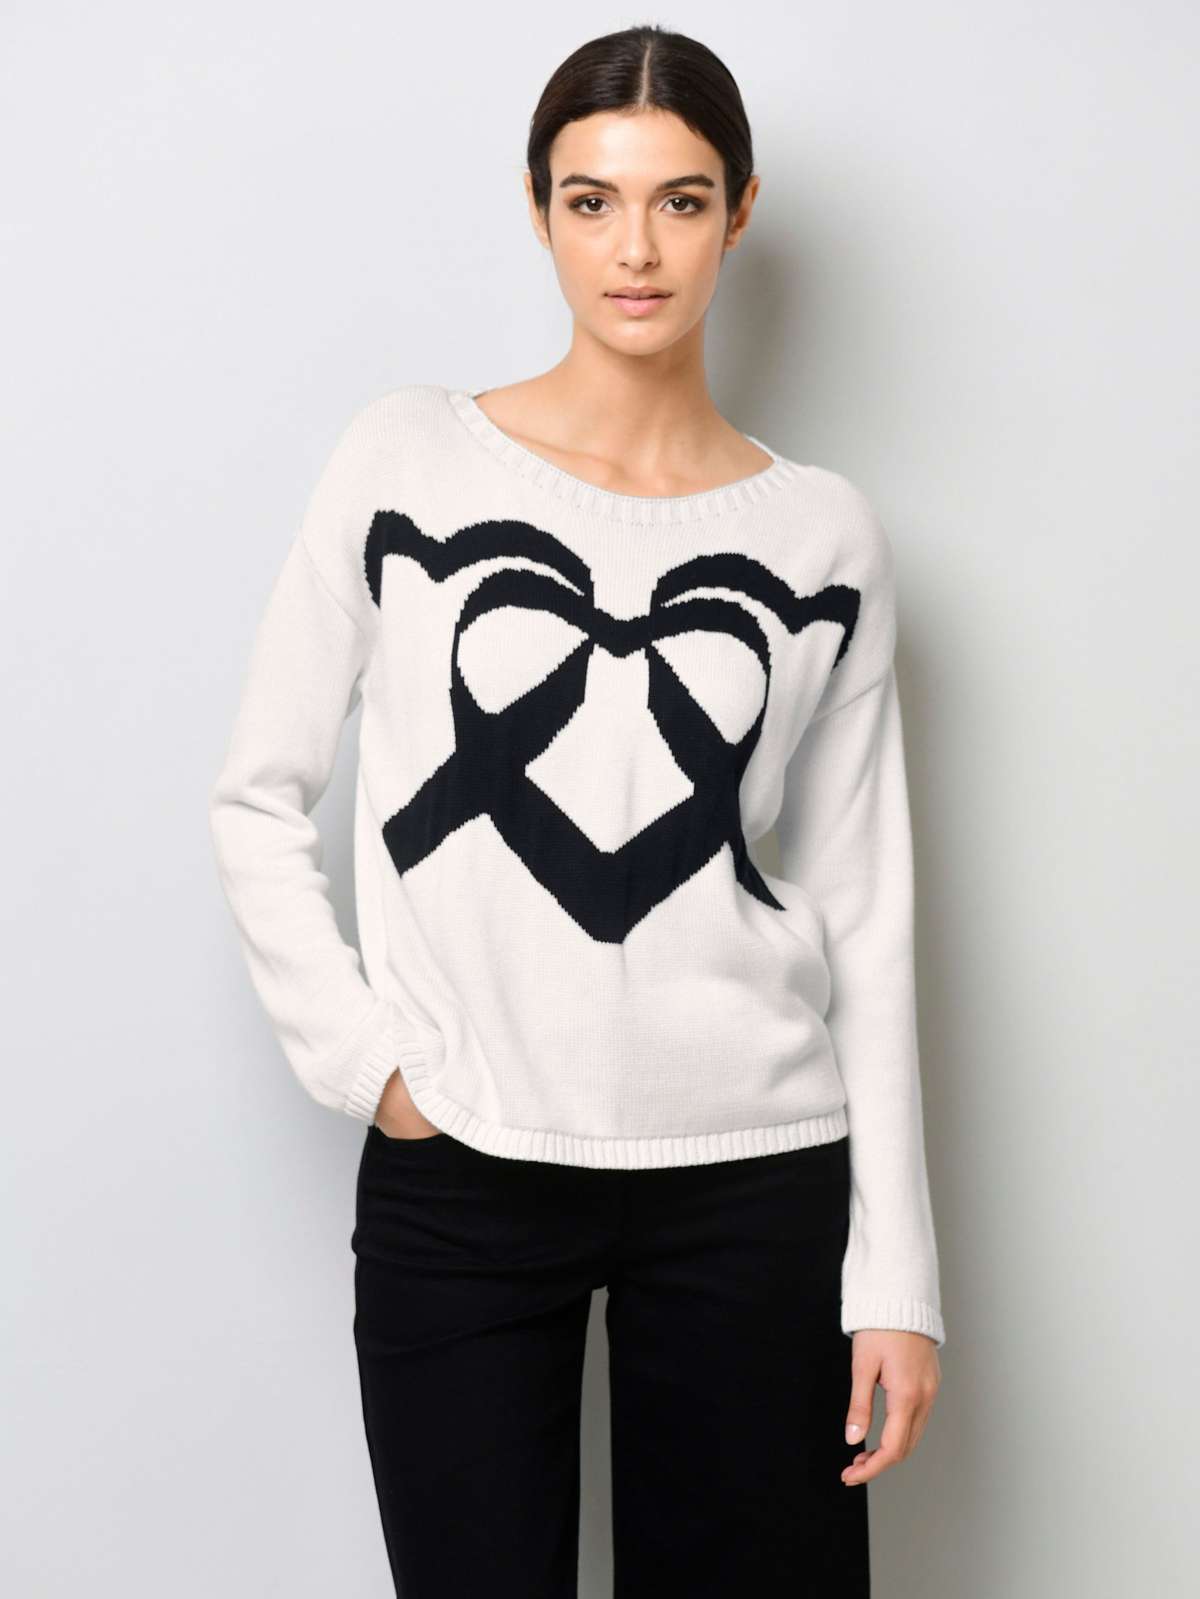 Вязаный пуловер с вязаным сердечком спереди.